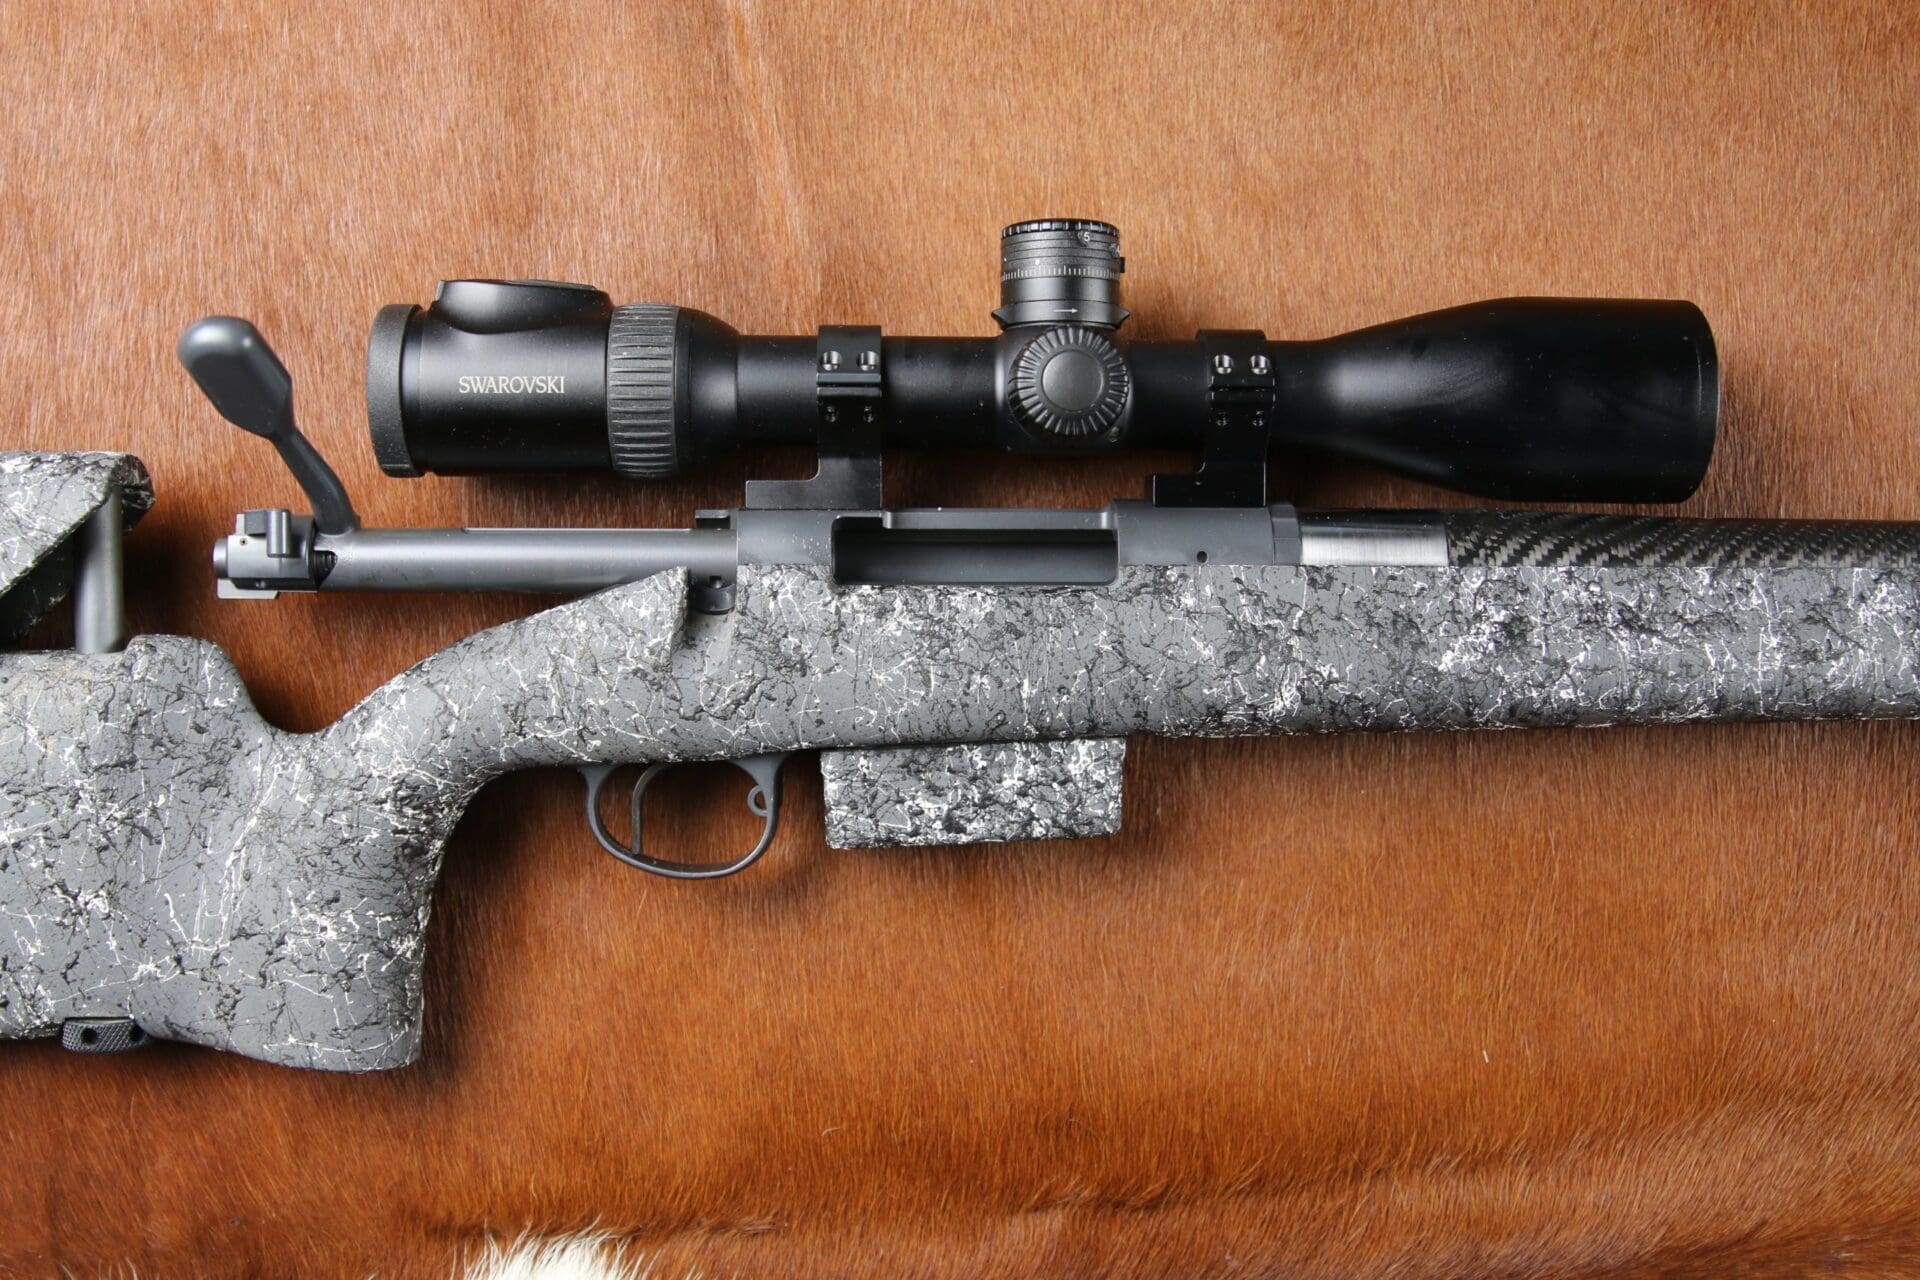 H-S Precision PLC long range rifle